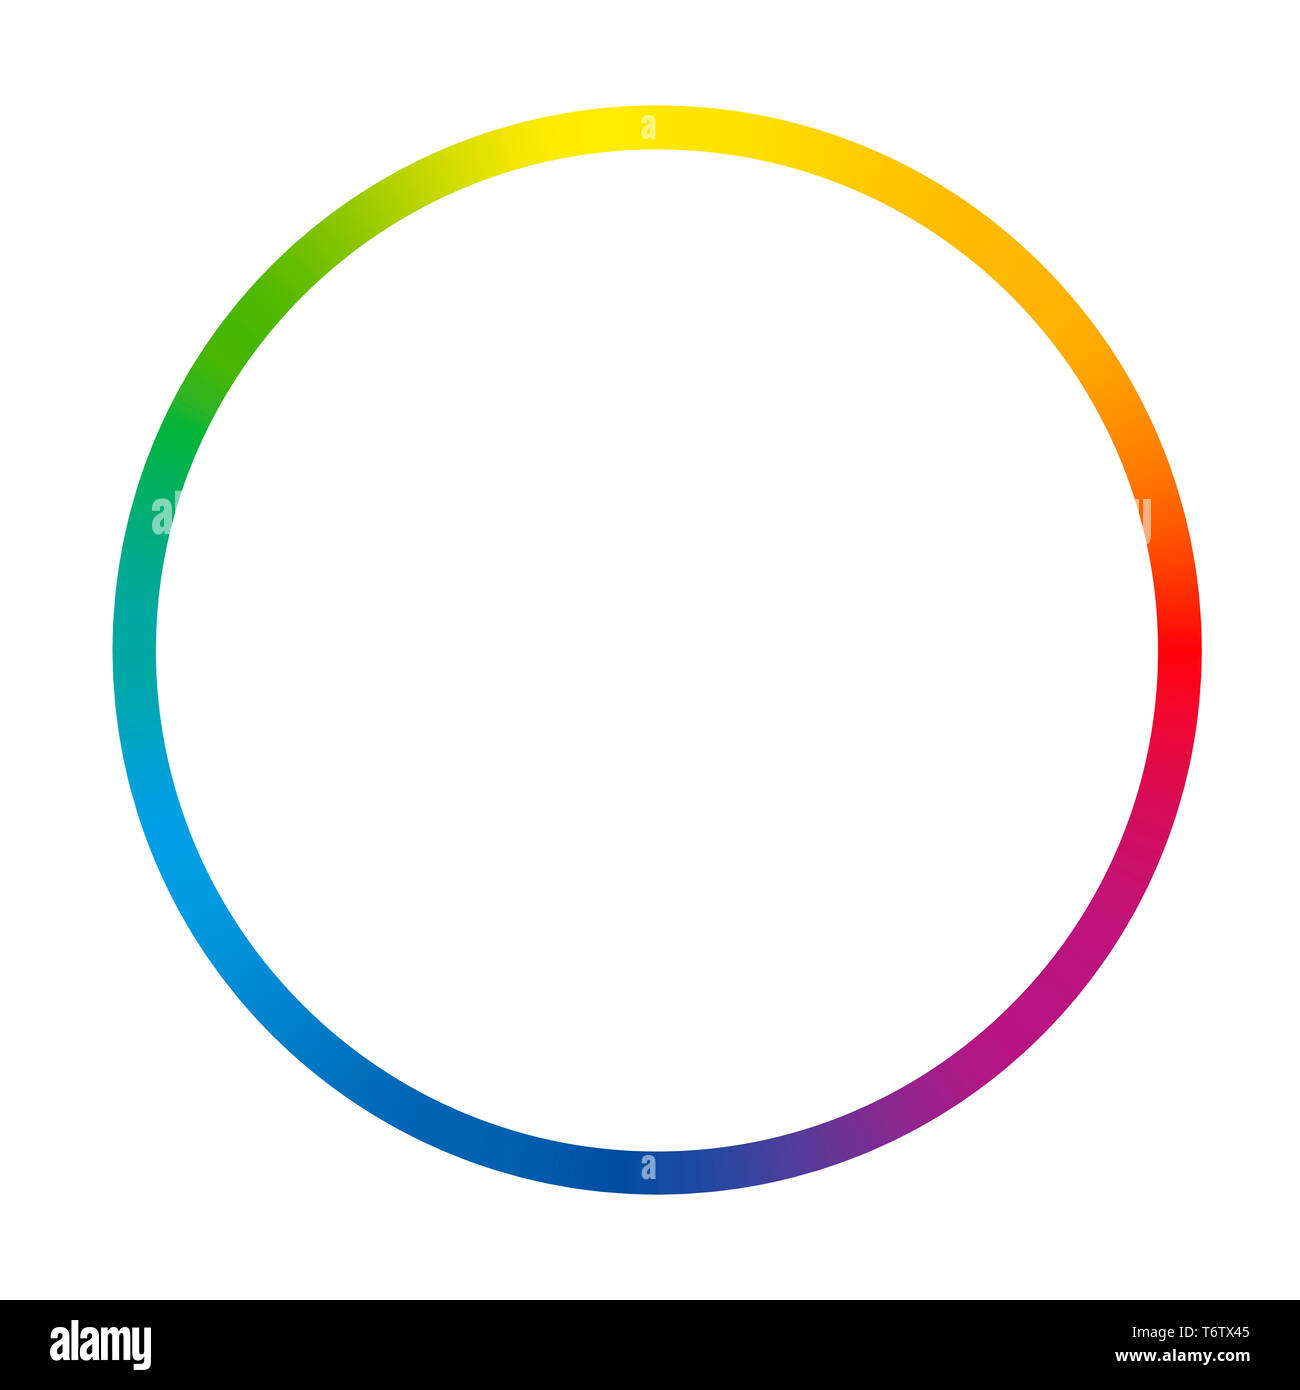 Hình tròn màu sắc chuyển động sẽ khiến bạn say mê và đắm chìm vào sự phối hợp đầy màu sắc. Hãy xem ngay hình ảnh liên quan để cảm nhận được sự thú vị của vòng tròn này.